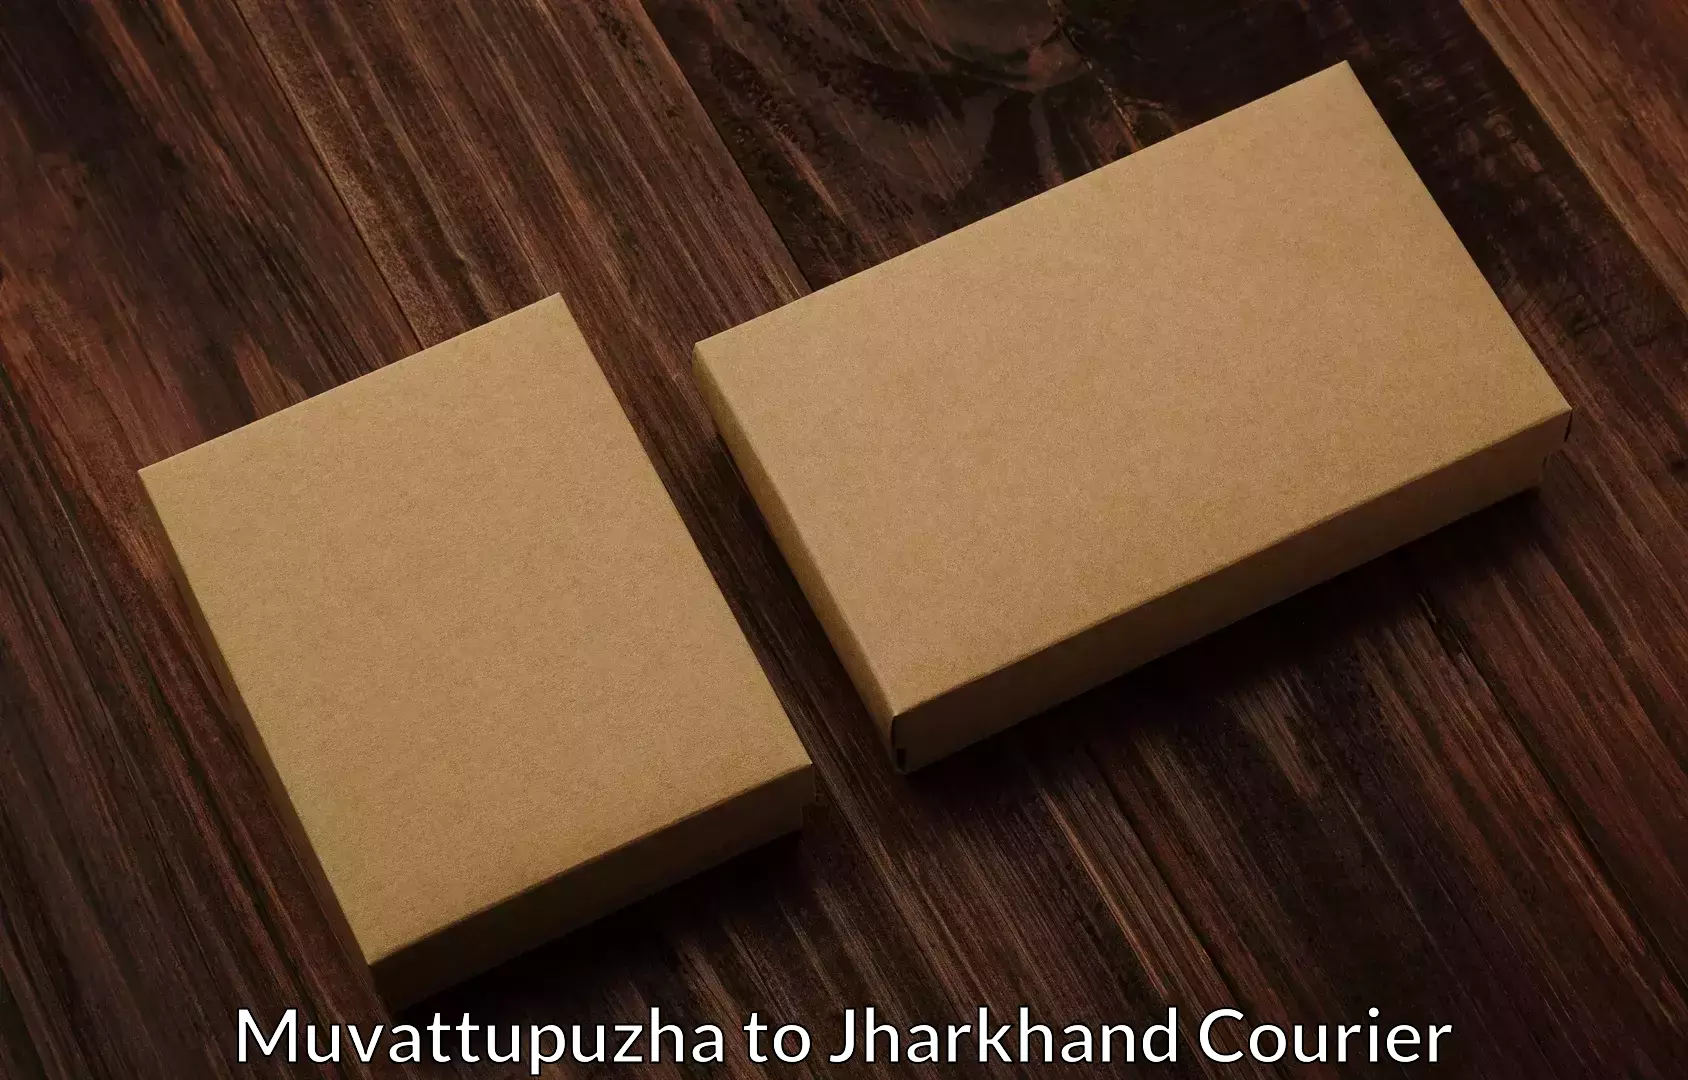 Professional moving company Muvattupuzha to Chandankiyari